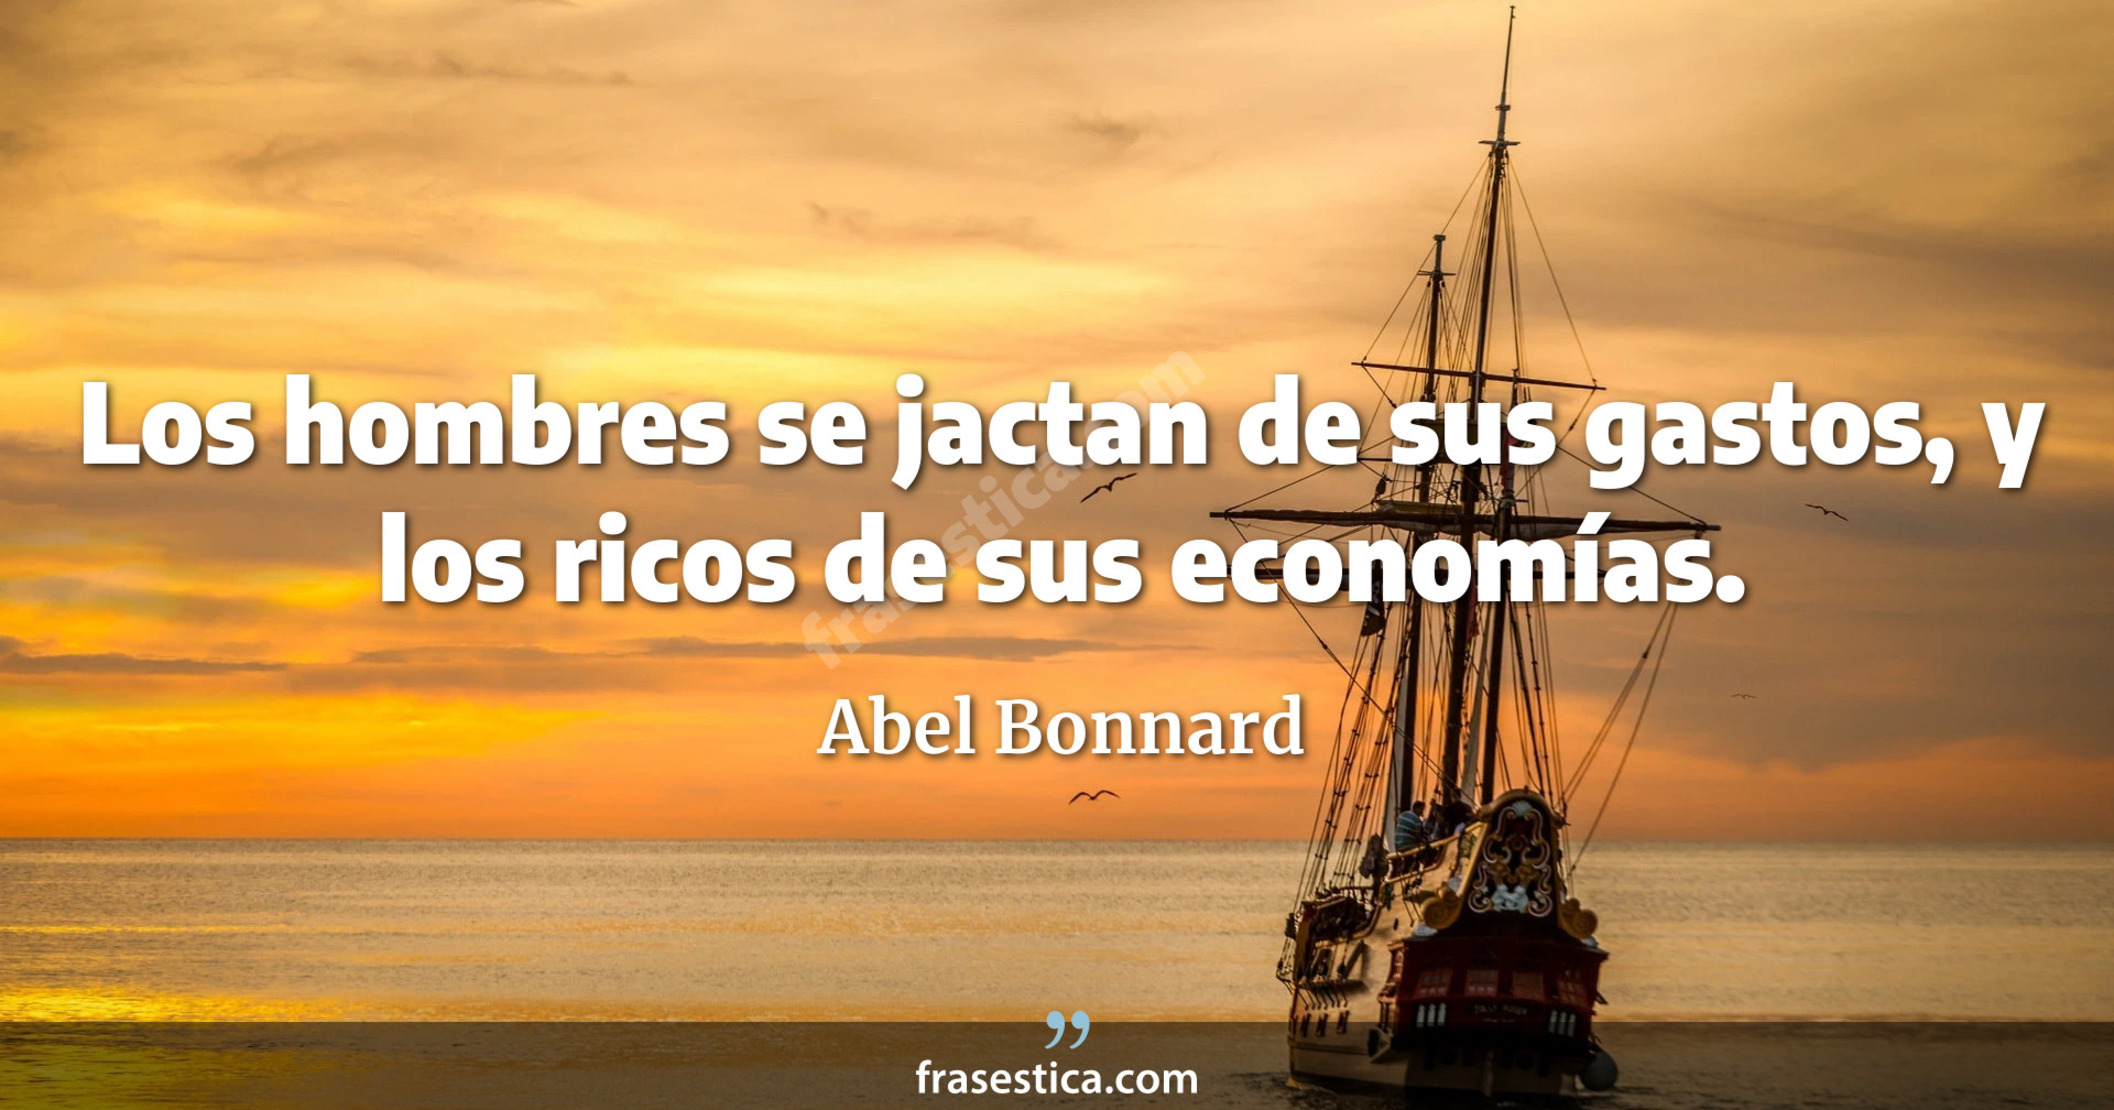 Los hombres se jactan de sus gastos, y los ricos de sus economías. - Abel Bonnard